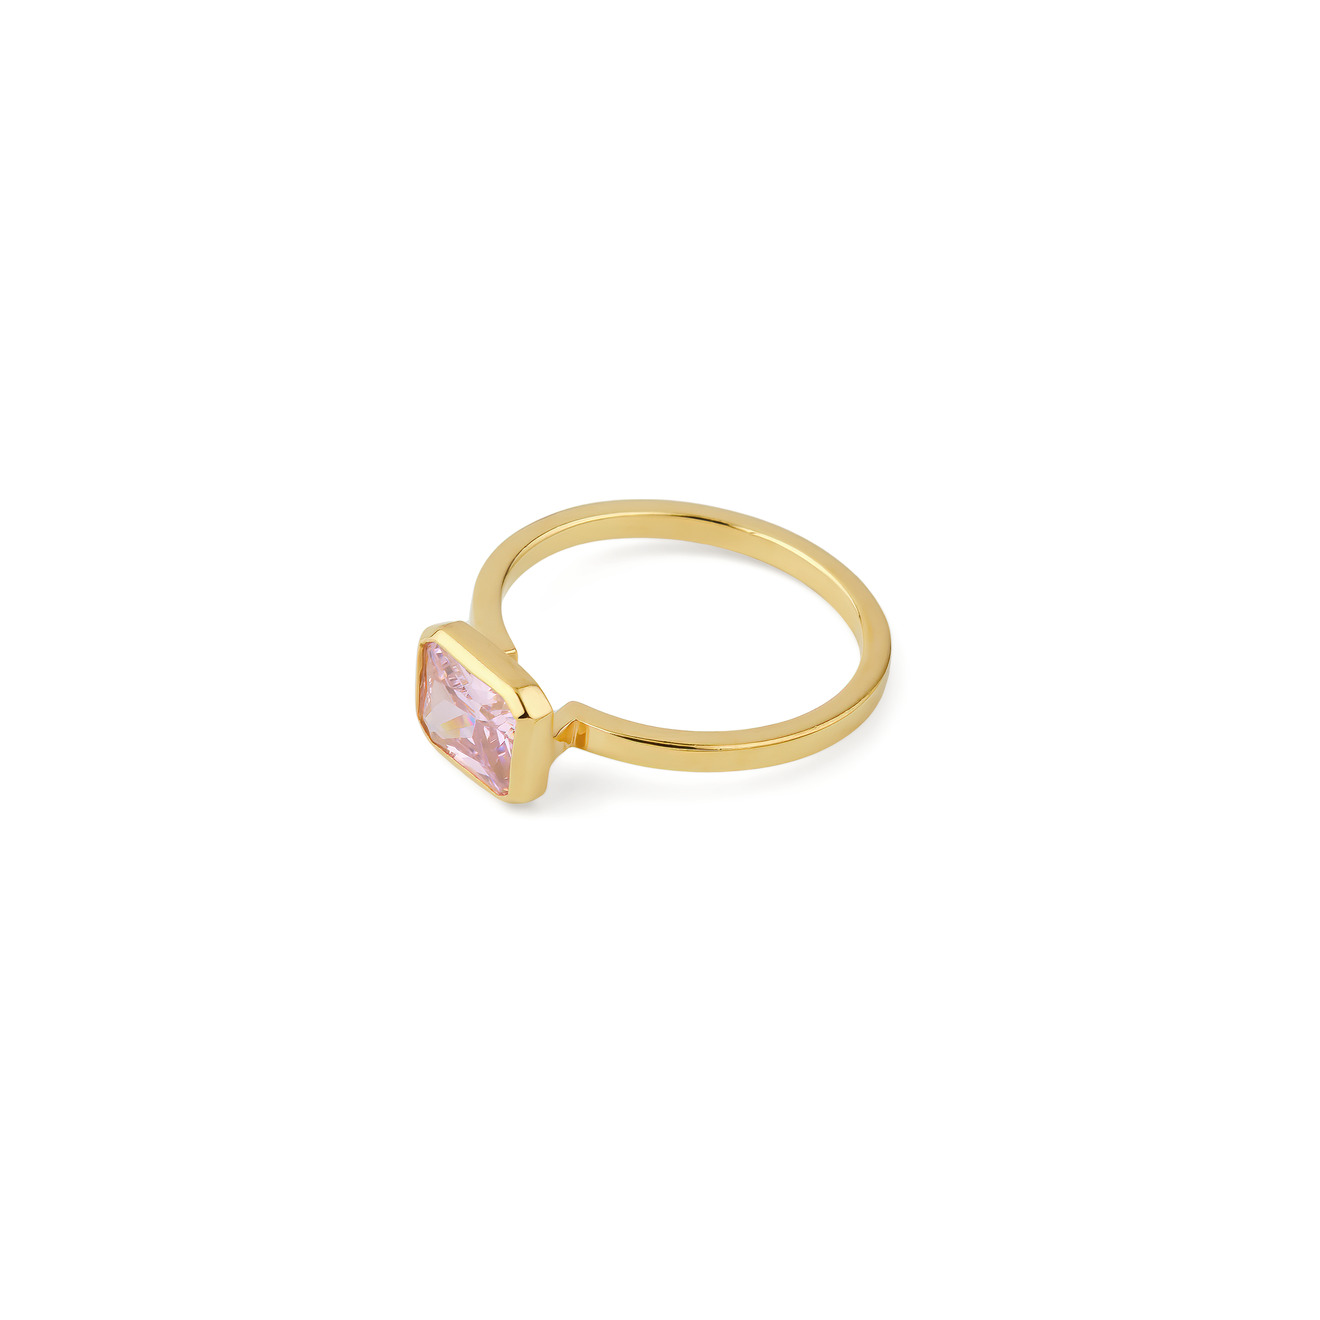 KRASHE jewellery Позолоченное кольцо Lollypop с розовым кристаллом позолоченное кольцо с розовым опалом